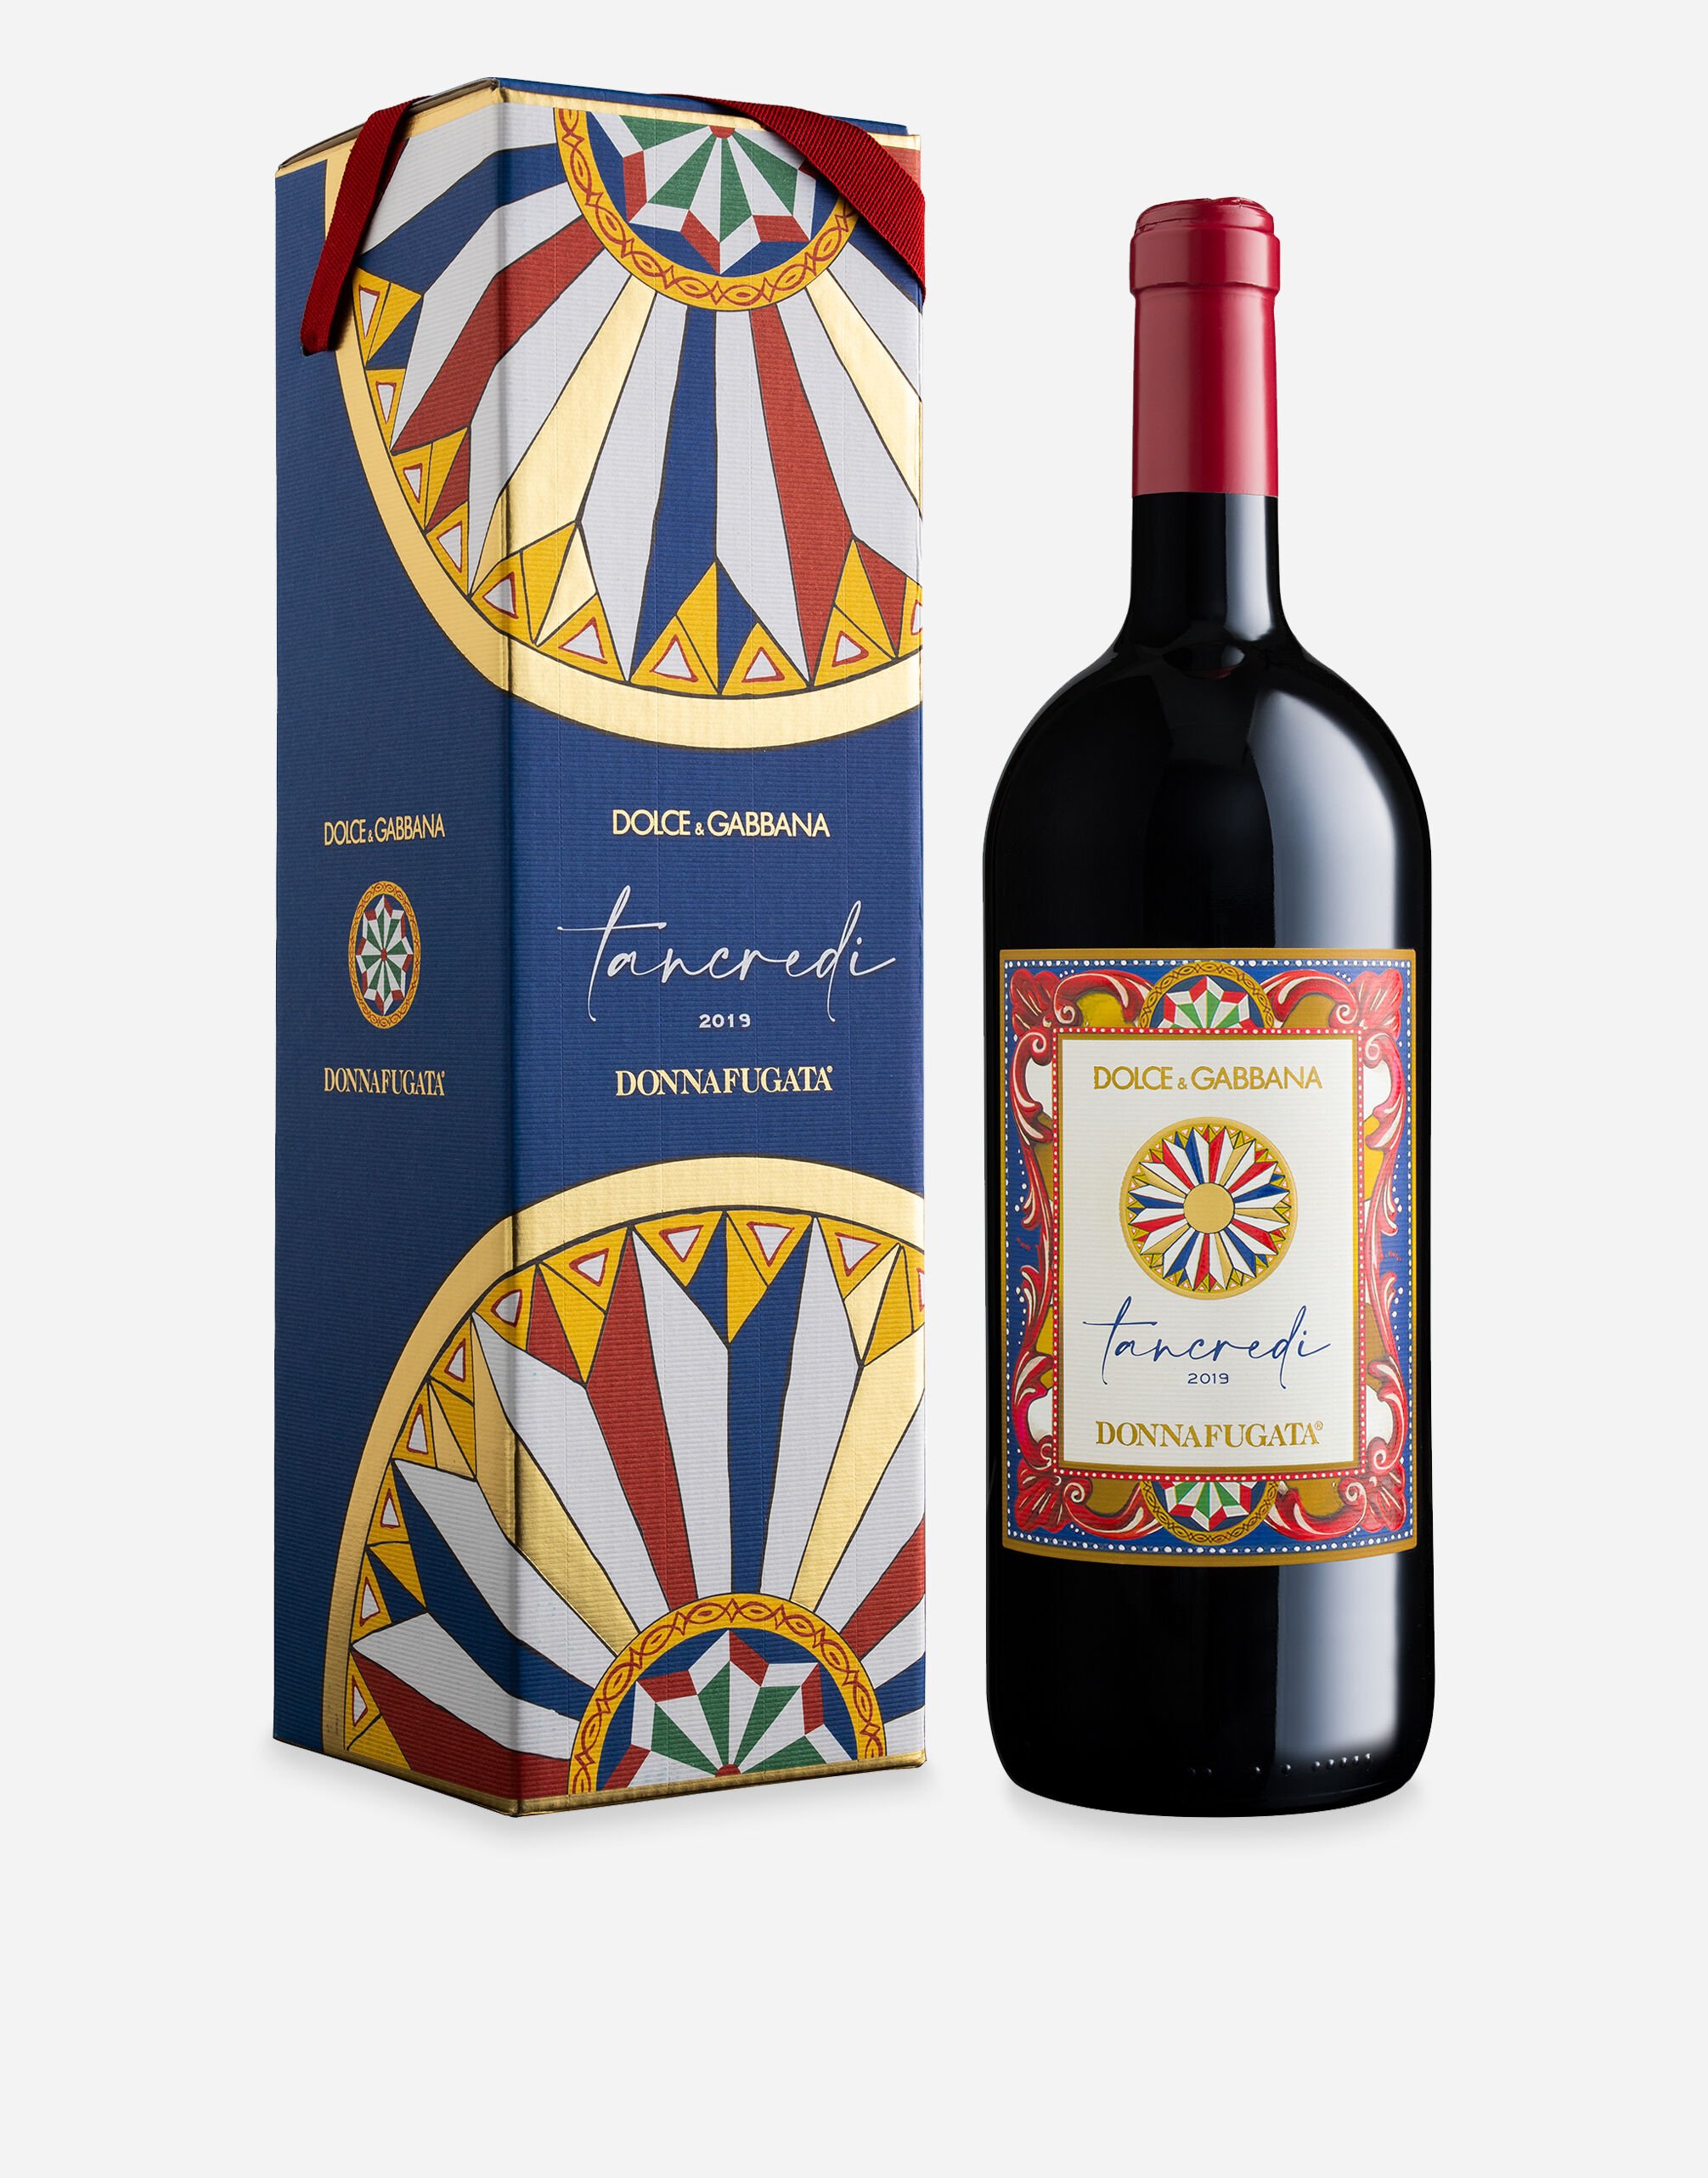 Dolce & Gabbana TANCREDI 2019 - Terre Siciliane IGT Rosso (Magnum 1.5L) Single box Multicolor PW0221RES75